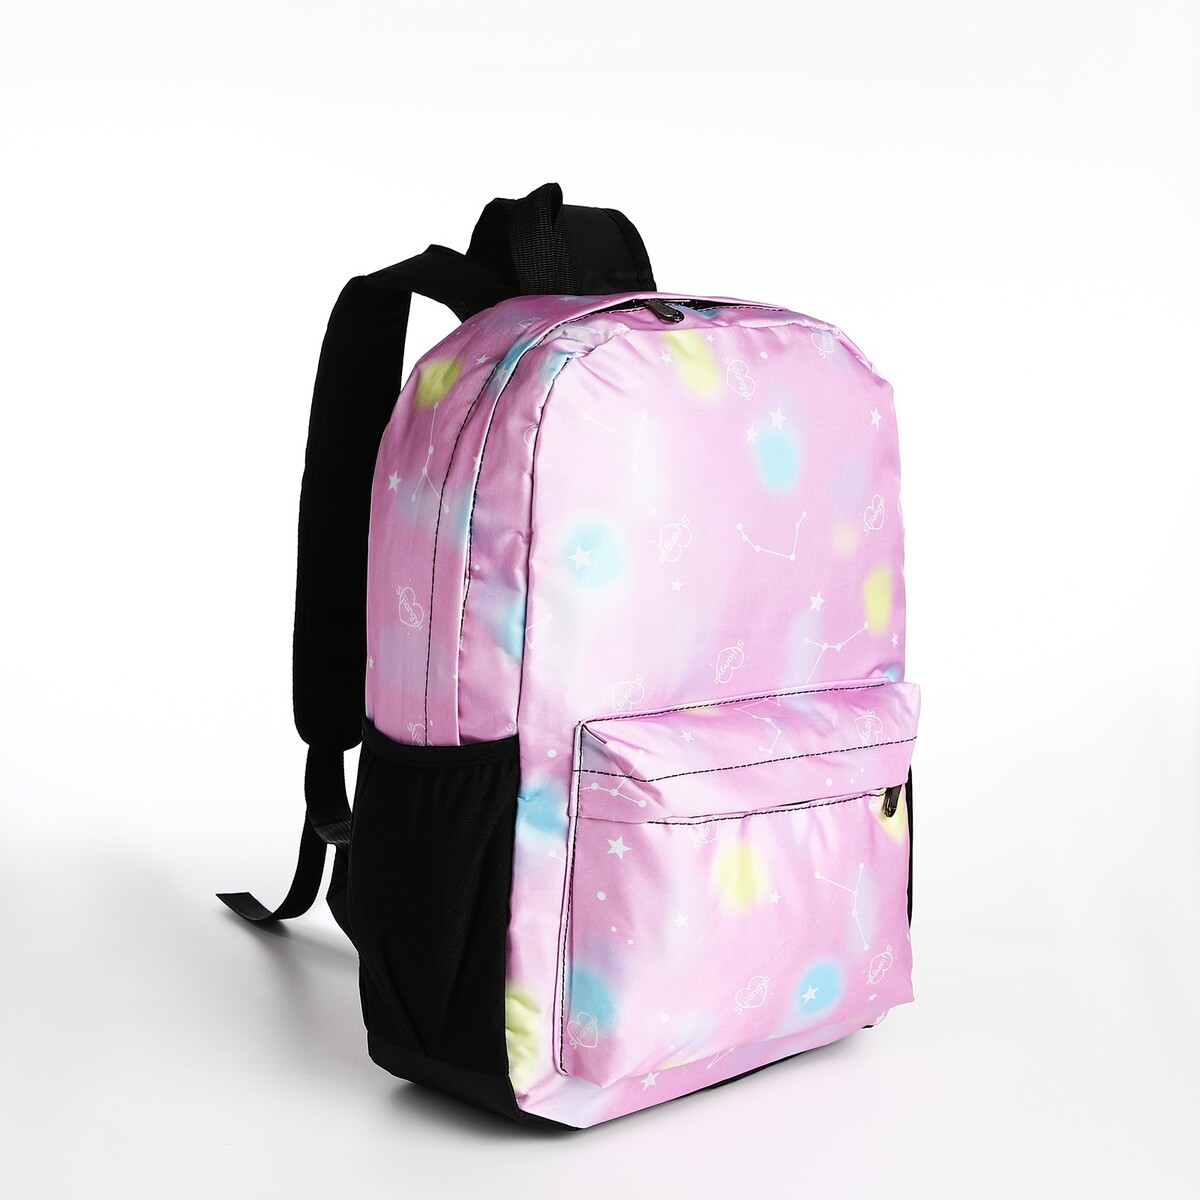 Рюкзак на молнии, 3 наружных кармана, цвет сиреневый рюкзак школьный из текстиля на молнии 4 кармана сиреневый